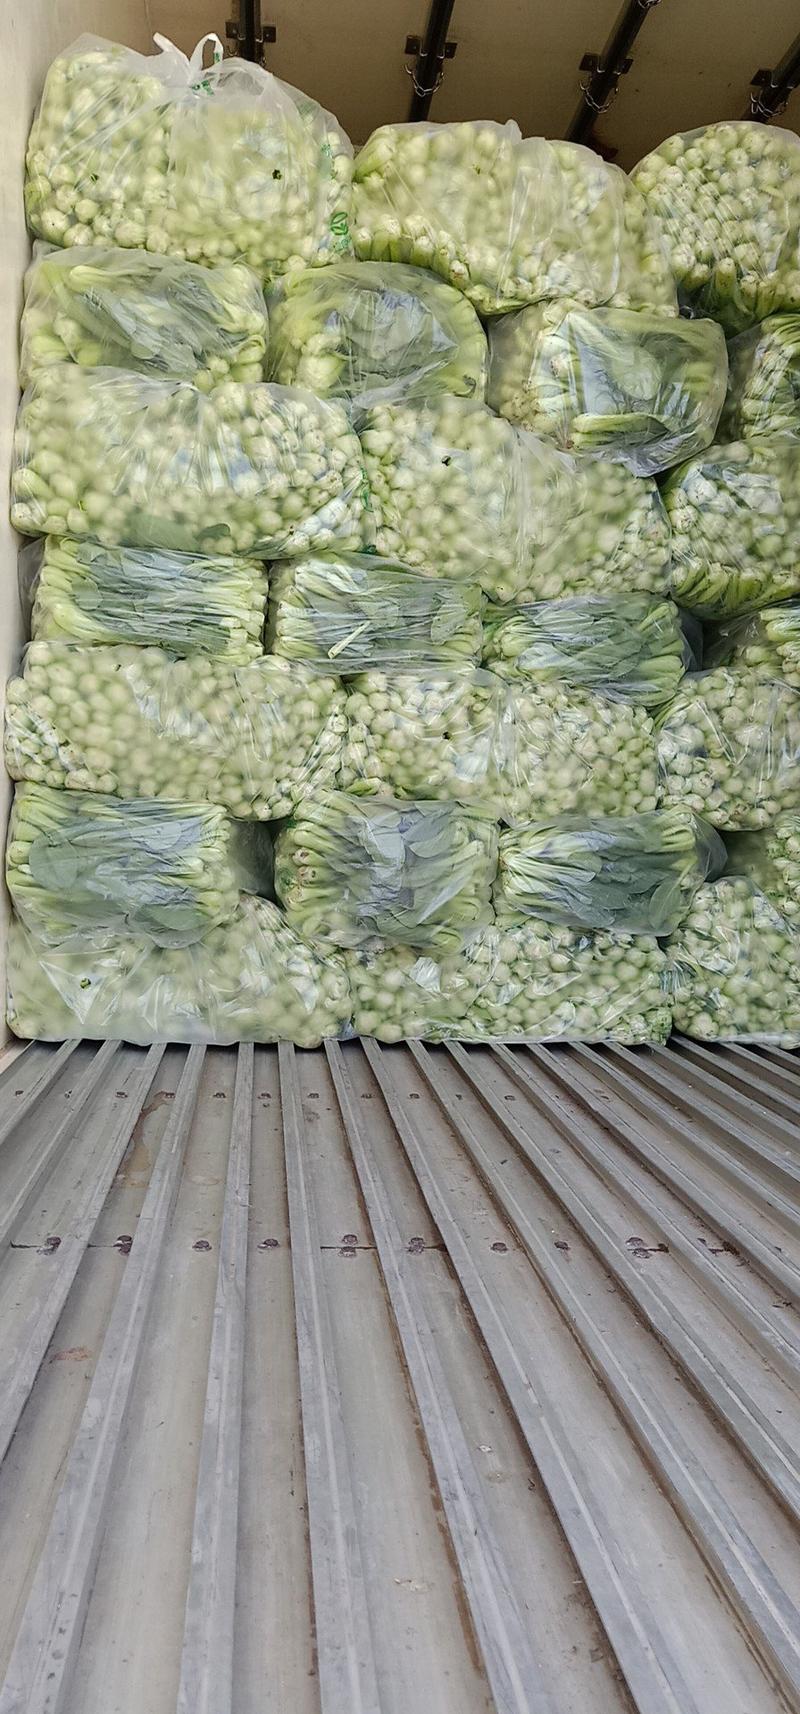 安徽太和基地上海青小青菜常年供应商超配送食堂加工厂